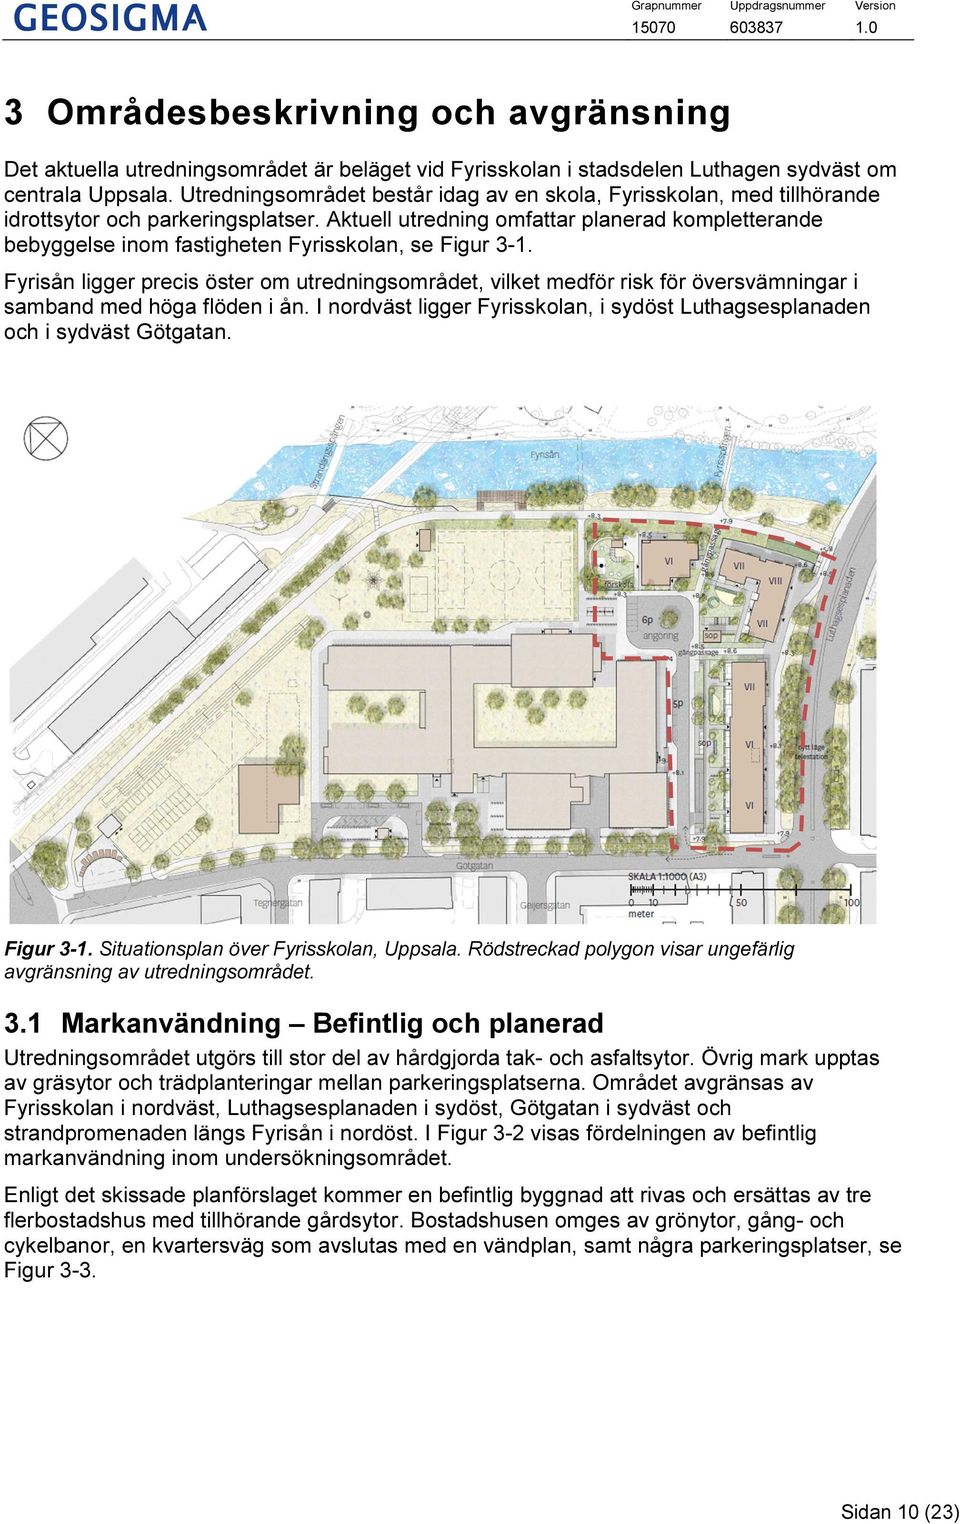 Aktuell utredning omfattar planerad kompletterande bebyggelse inom fastigheten Fyrisskolan, se Figur 3-1.